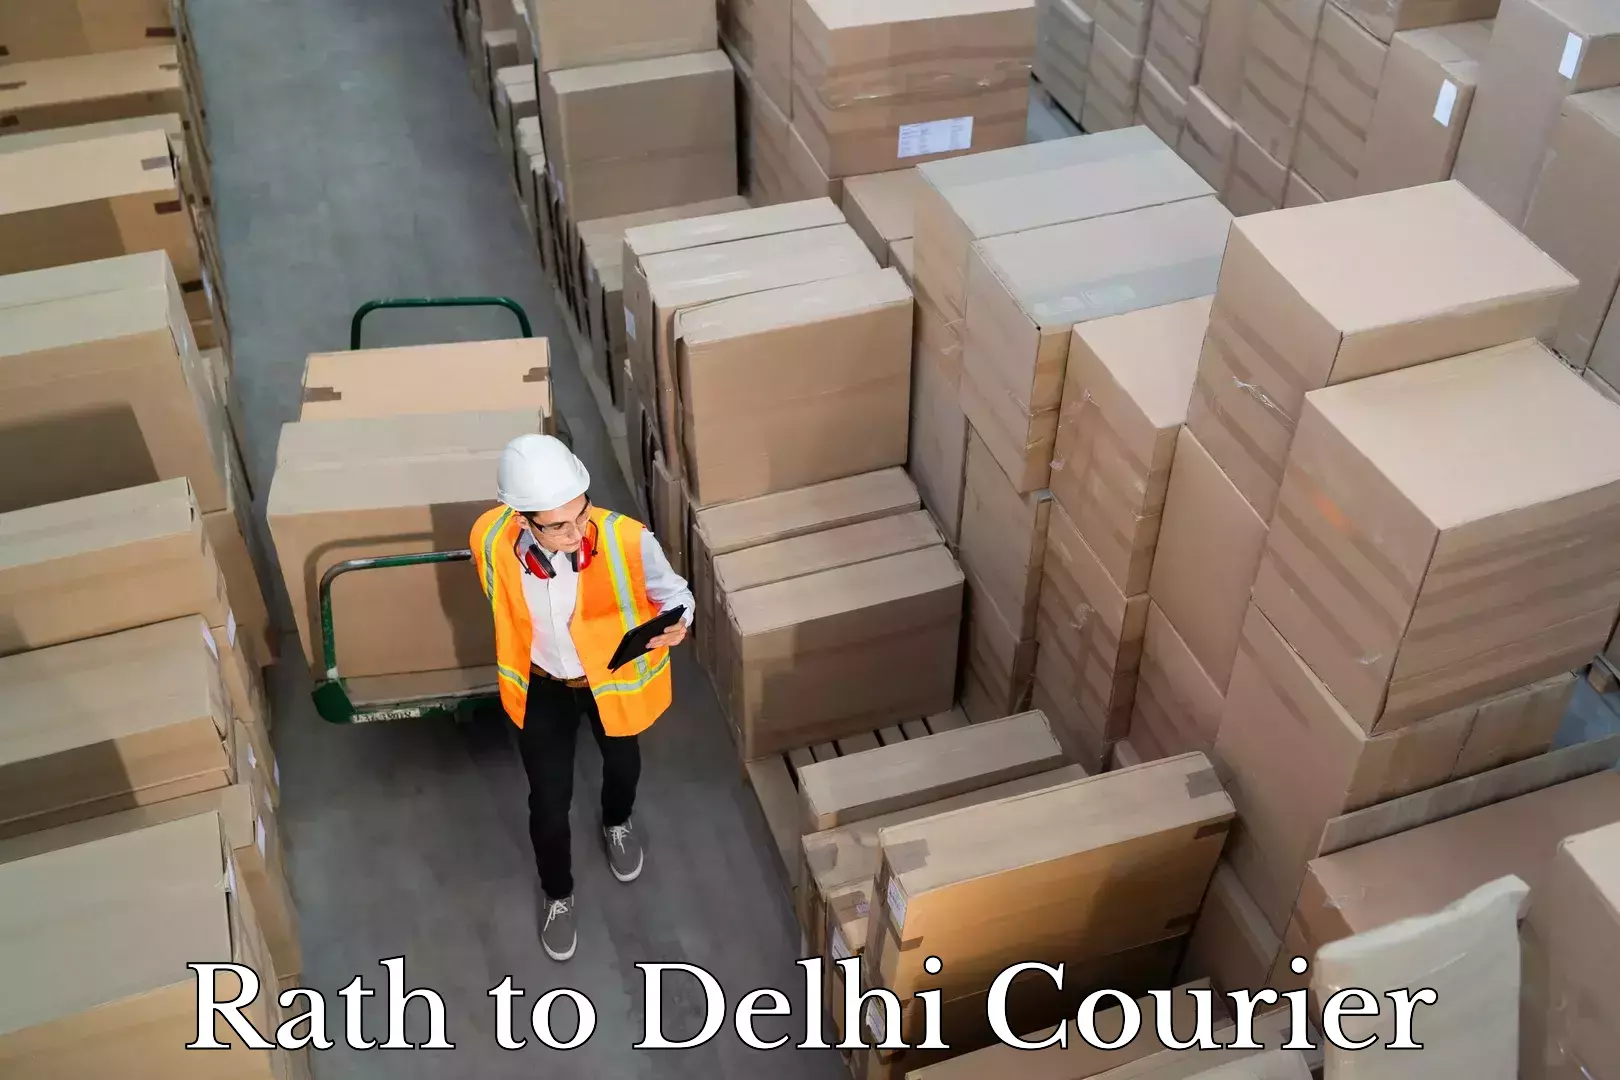 Courier service comparison in Rath to Delhi